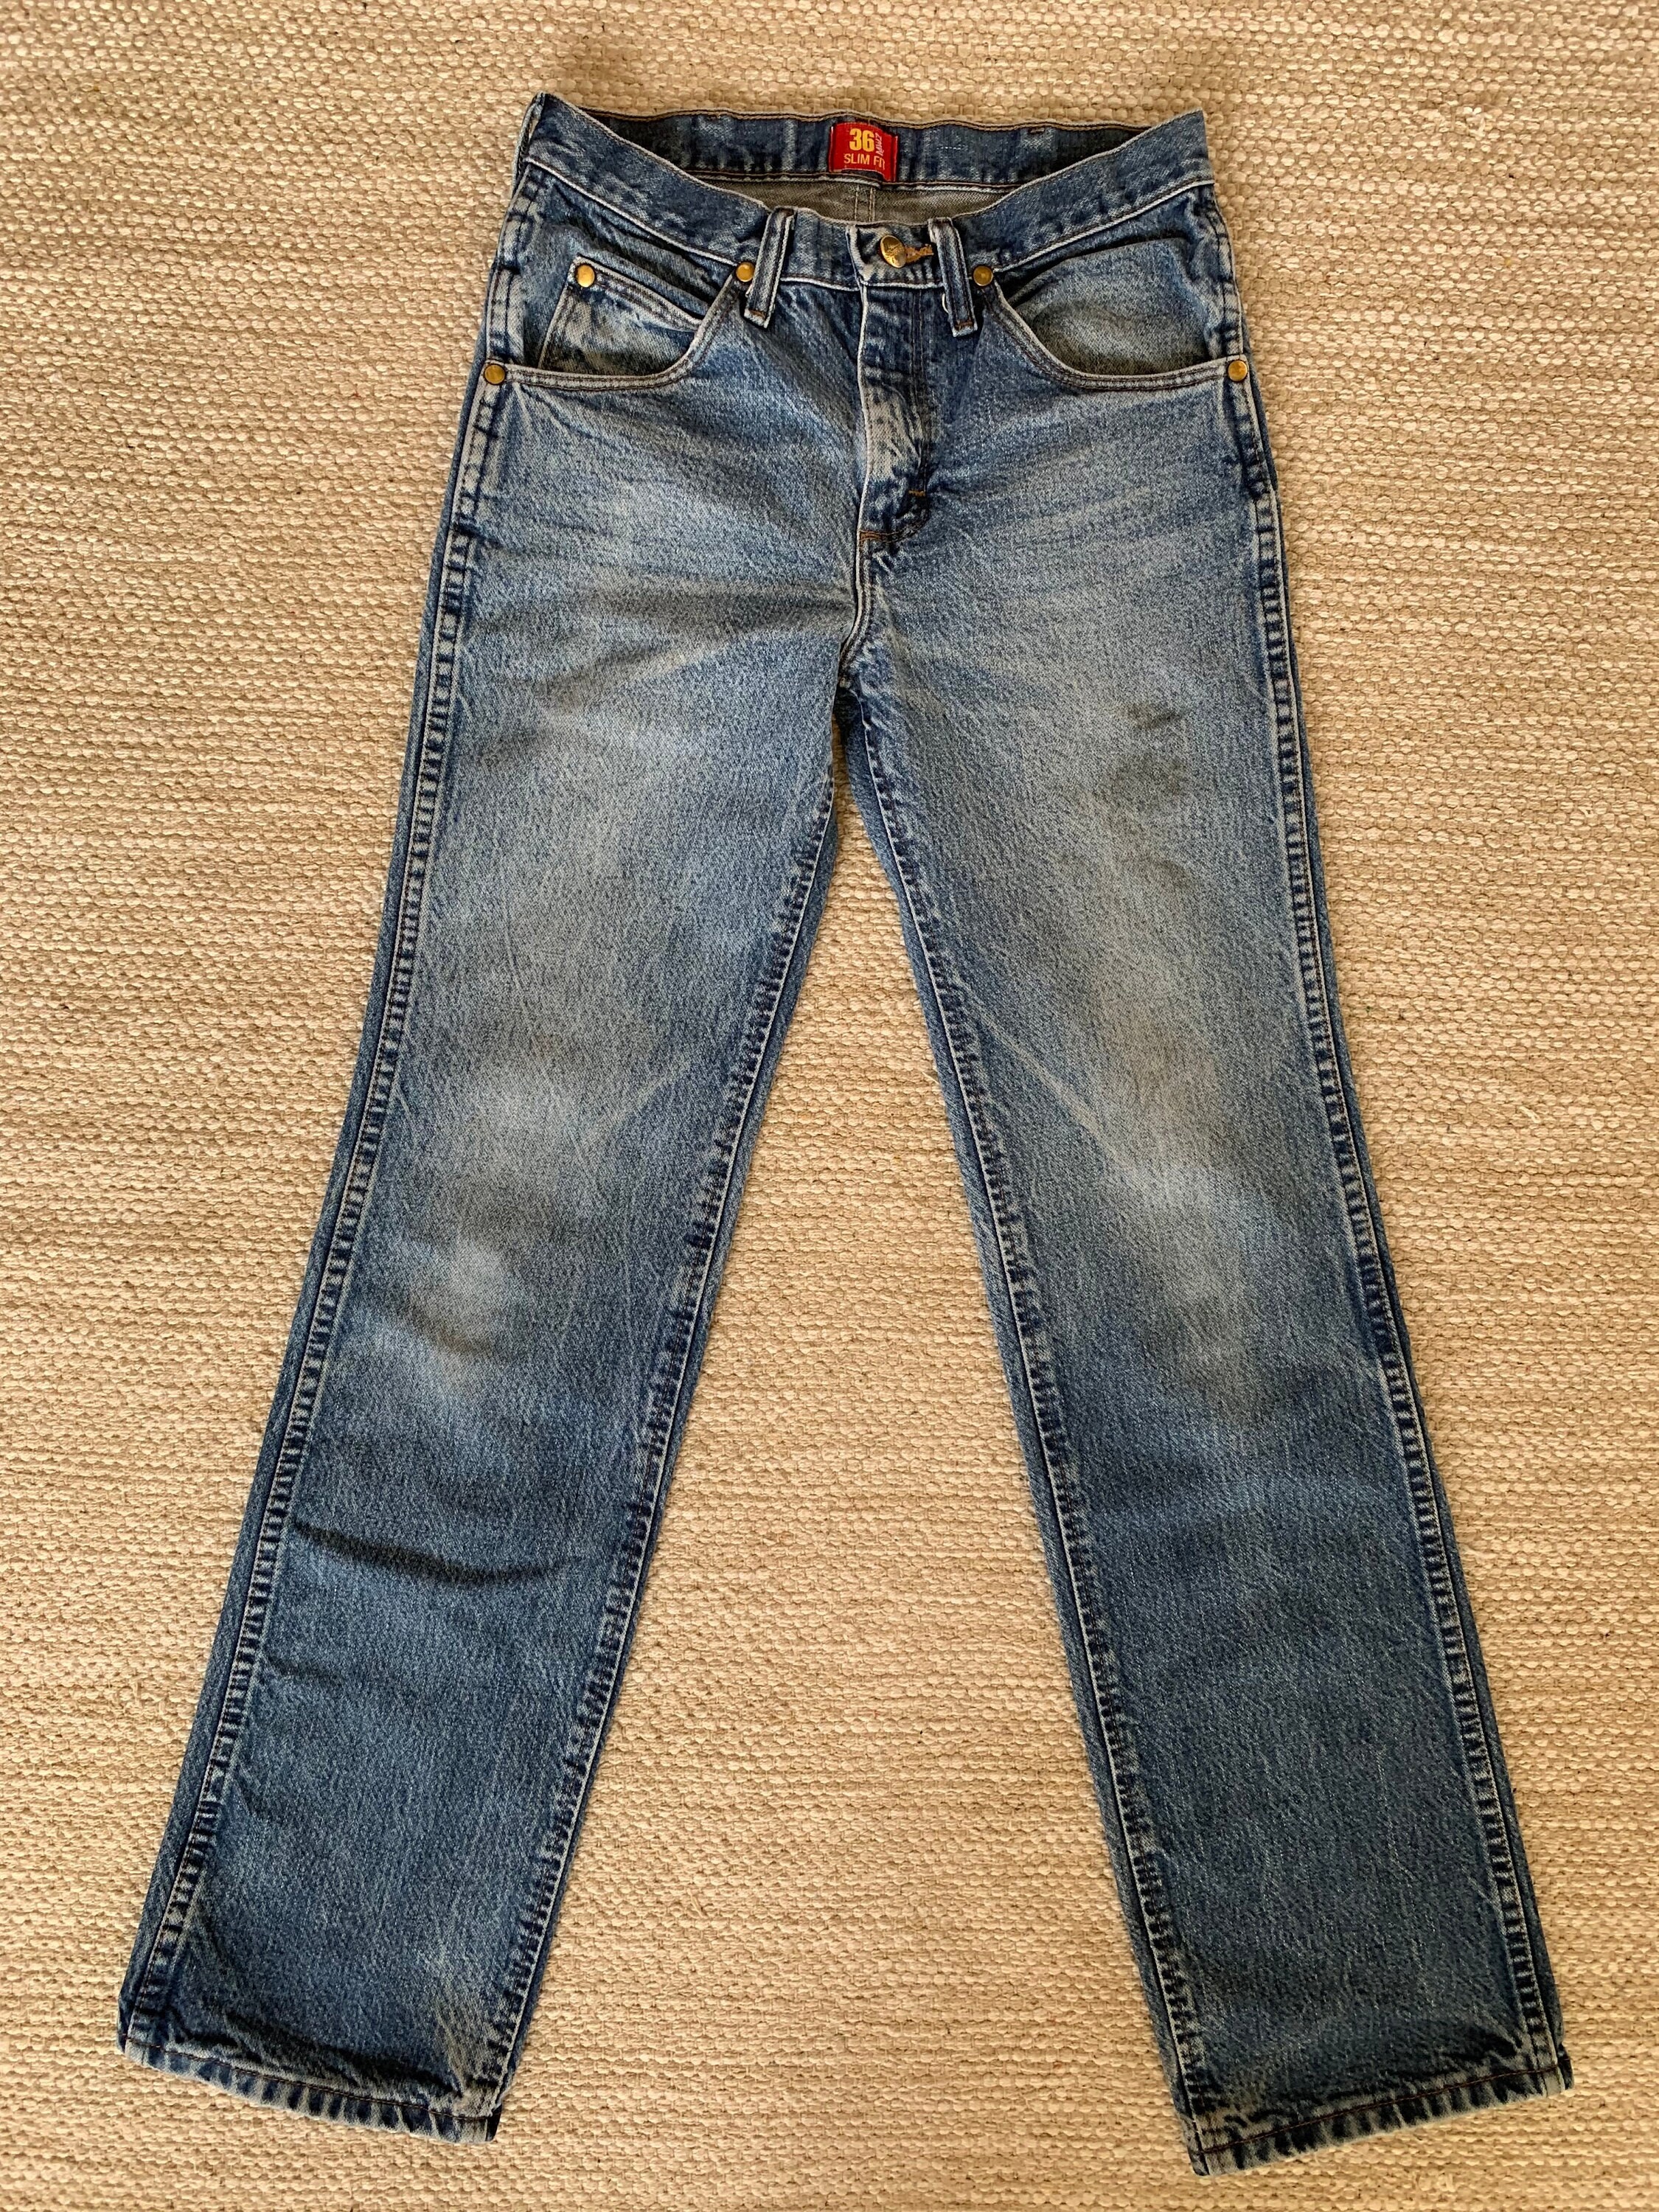 Vntg 90s 28x32 Wrangler Slim Fit Jeans 36MWZPD Vintage - Etsy